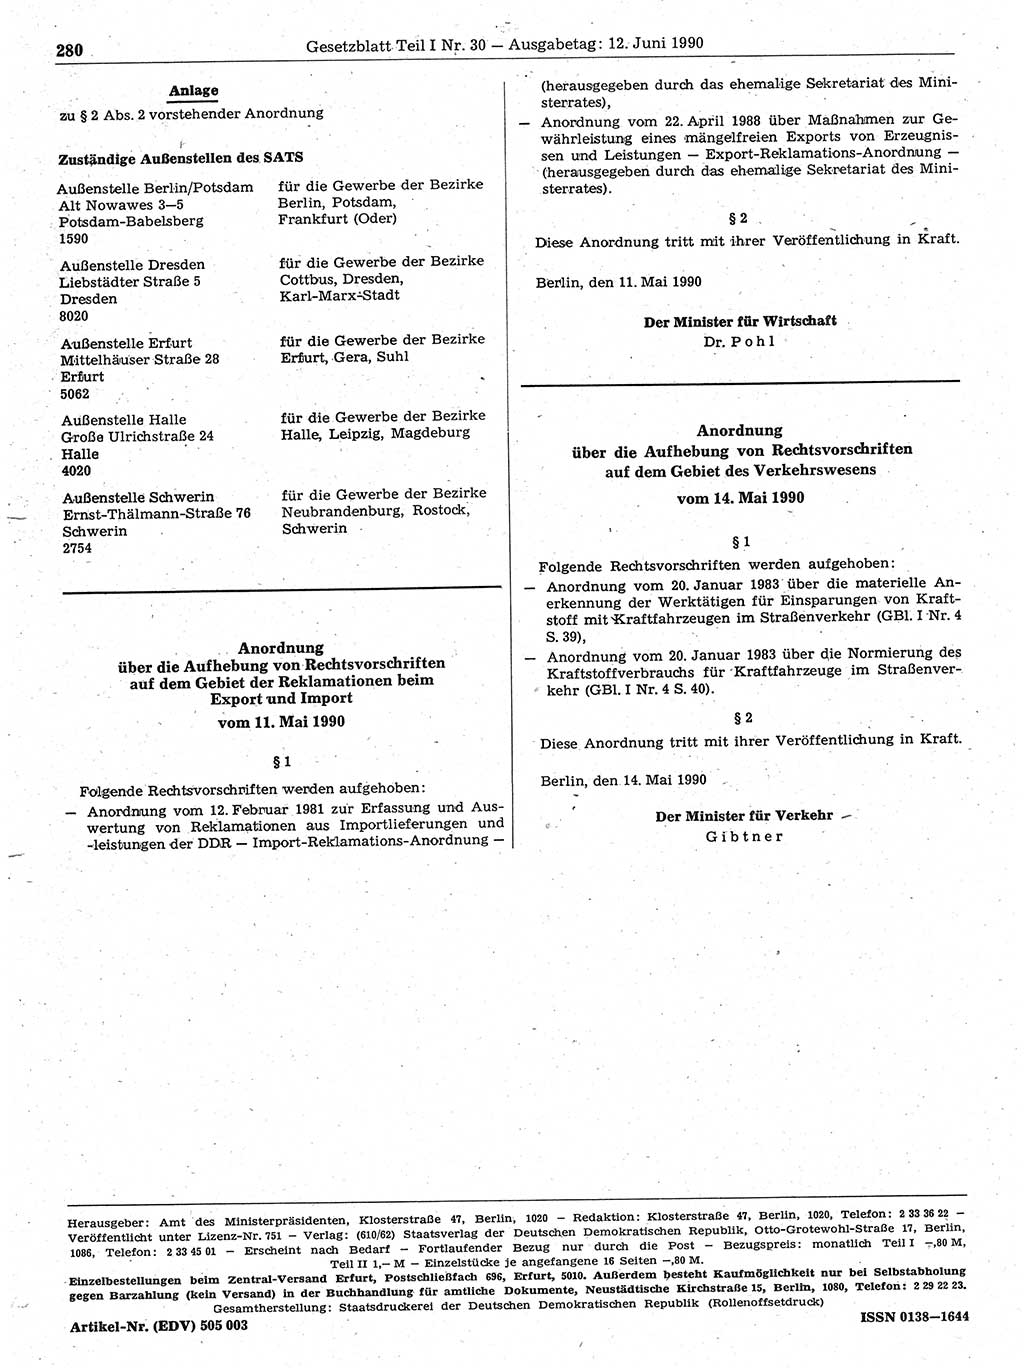 Gesetzblatt (GBl.) der Deutschen Demokratischen Republik (DDR) Teil Ⅰ 1990, Seite 280 (GBl. DDR Ⅰ 1990, S. 280)